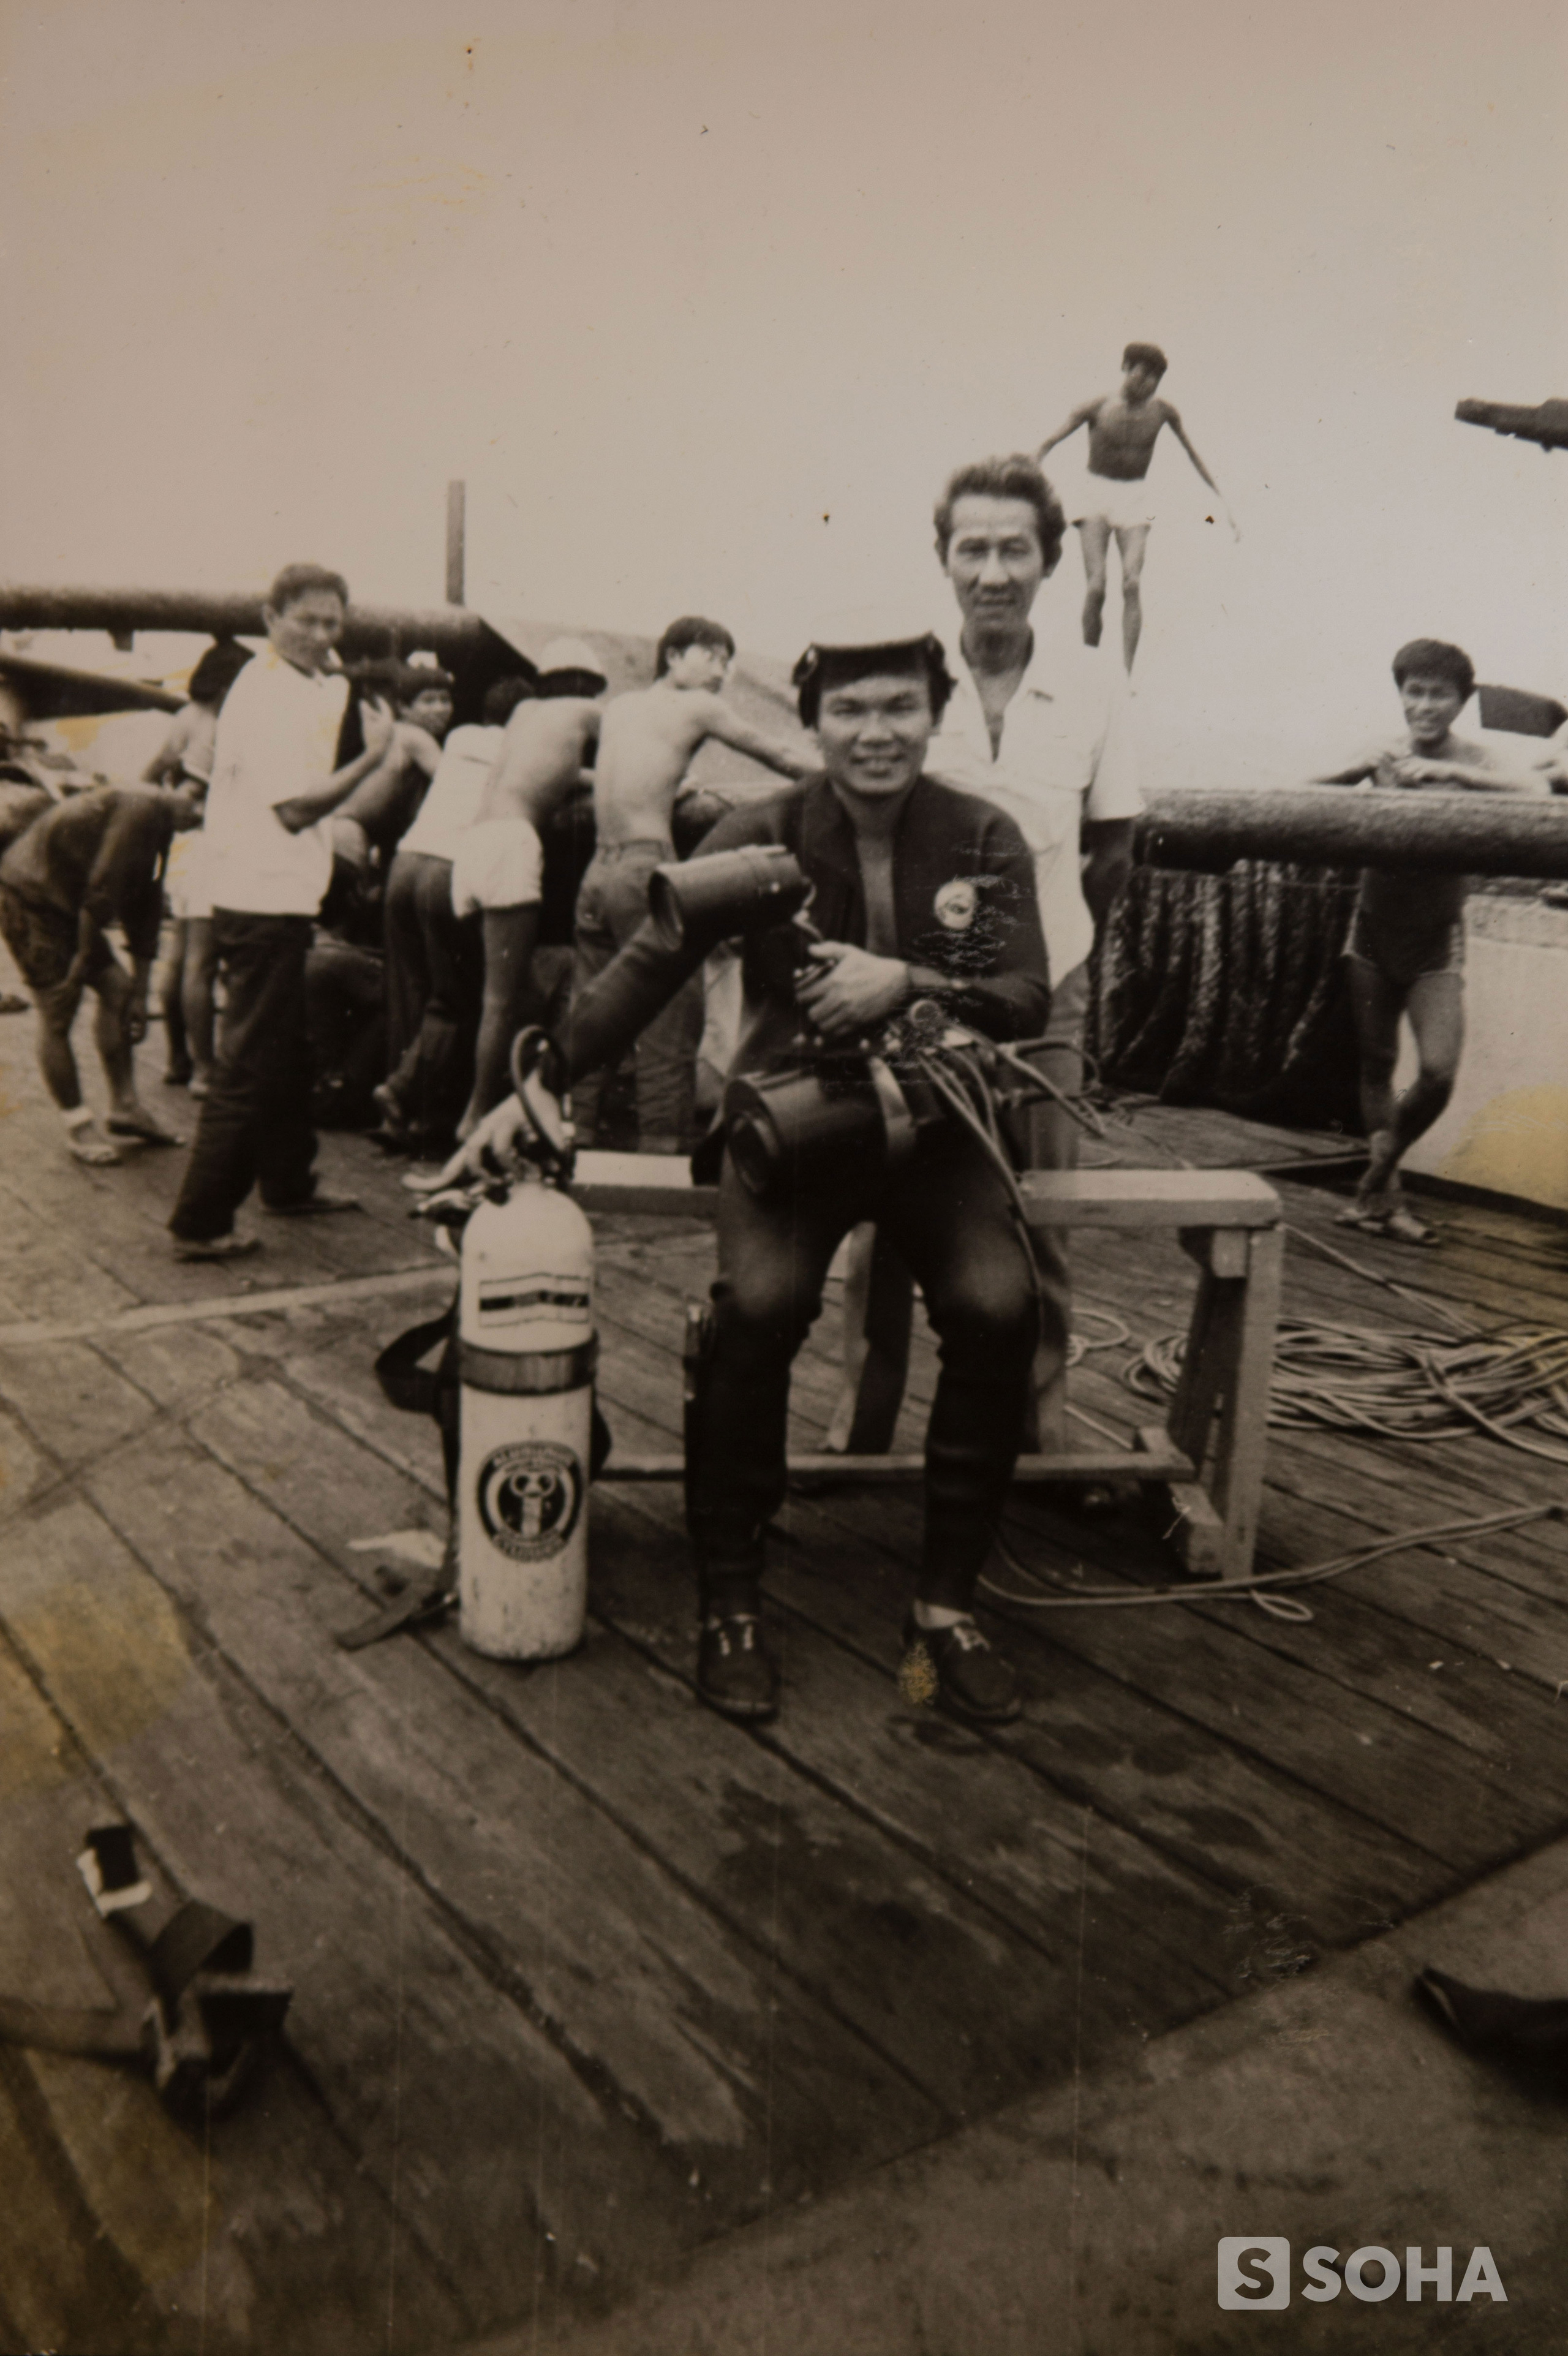 Những người thợ lặn ở Trường Sa 1988: “Không chỉ đi tìm hài cốt, chúng ta ở đây thay đồng đội đã mất tiếp tục giữ đảo…” - Ảnh 1.